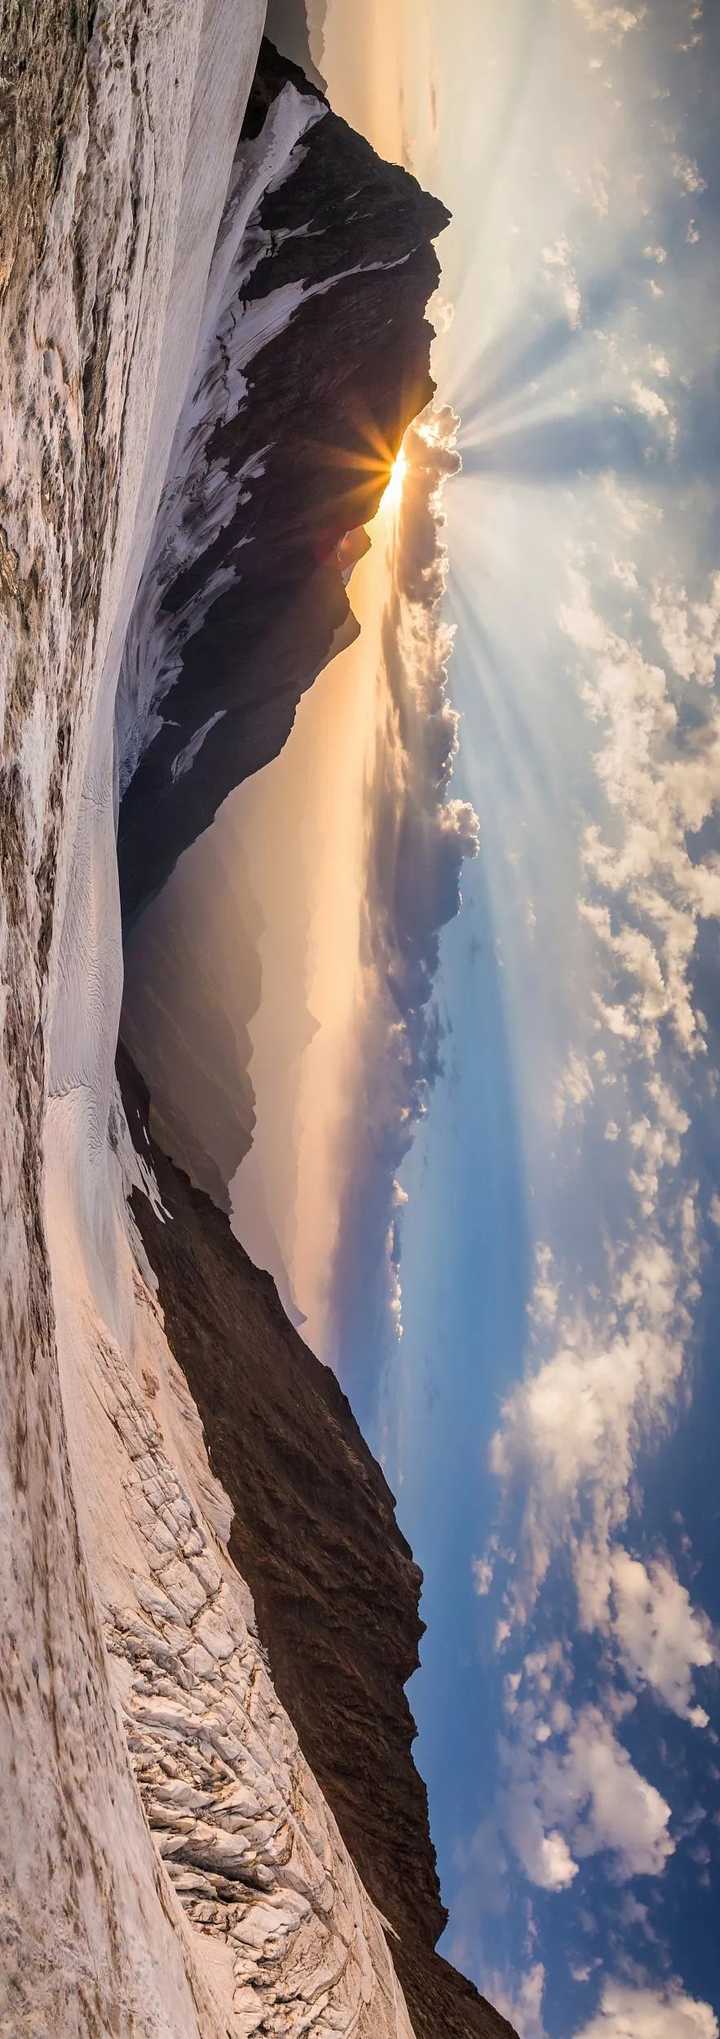 请横屏观看,高加索山mount laila,图片源自@vcg